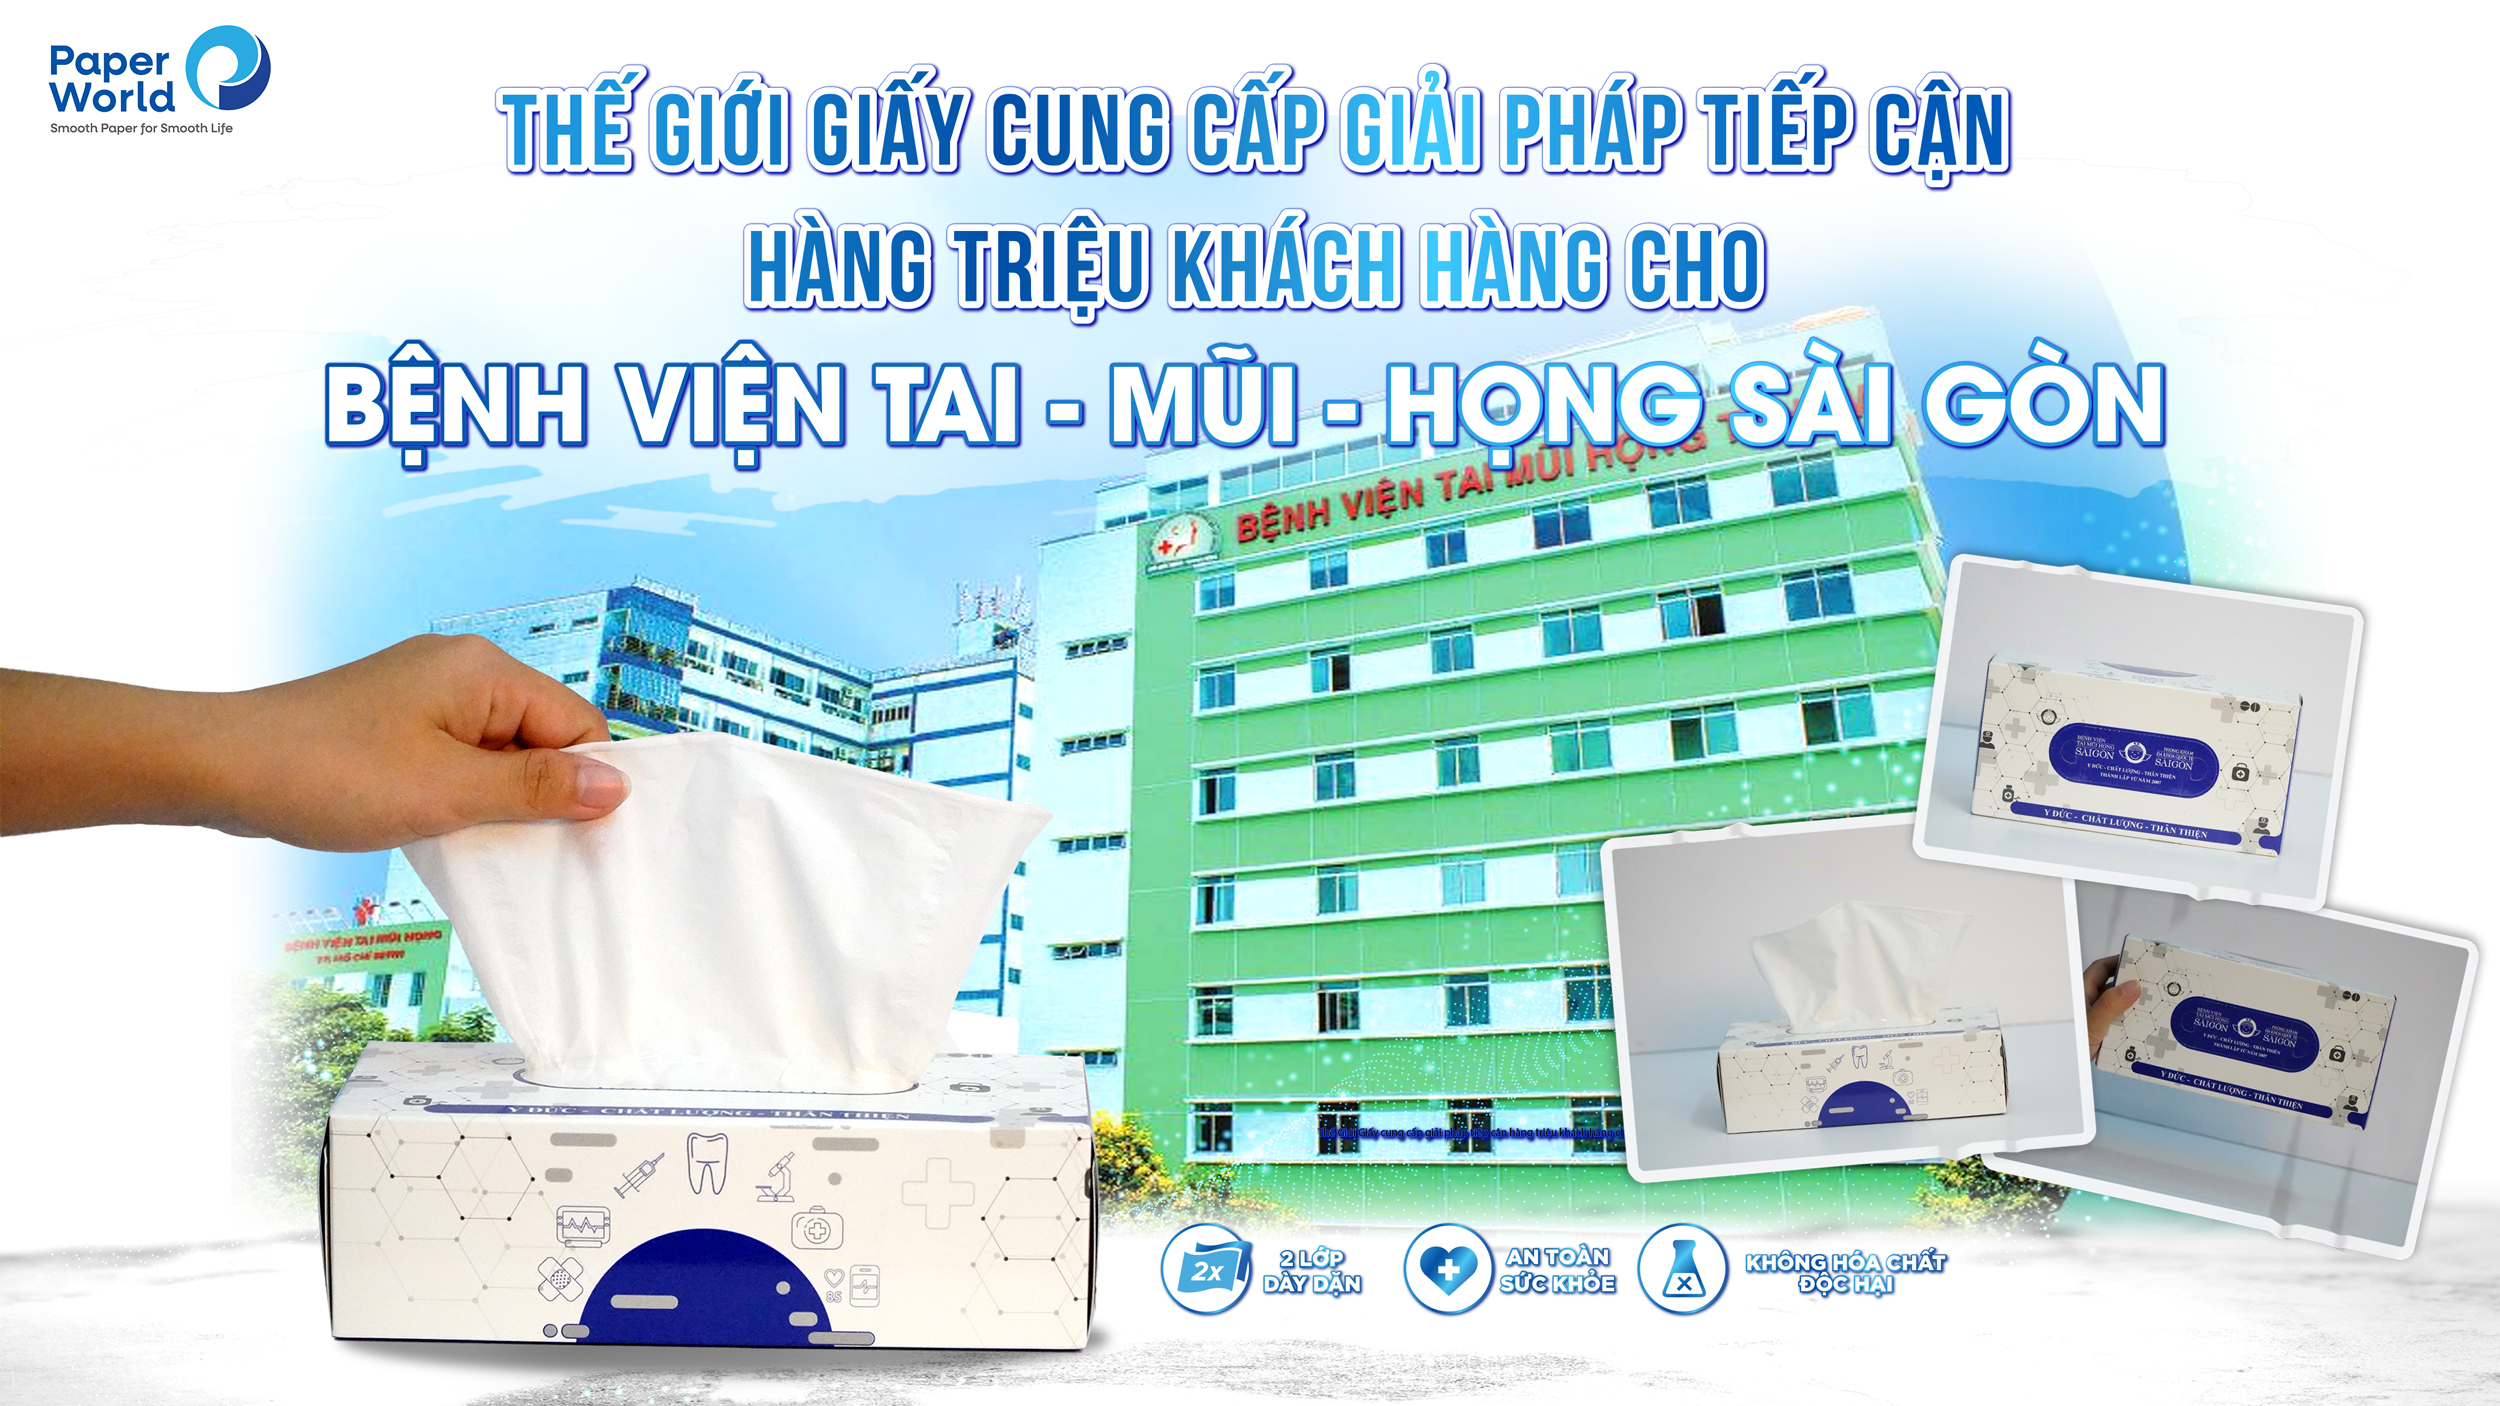 Thế Giới Giấy cung cấp giải pháp tiếp cận hàng triệu khách hàng cho bệnh viện Tai - Mũi - Họng Sài Gòn